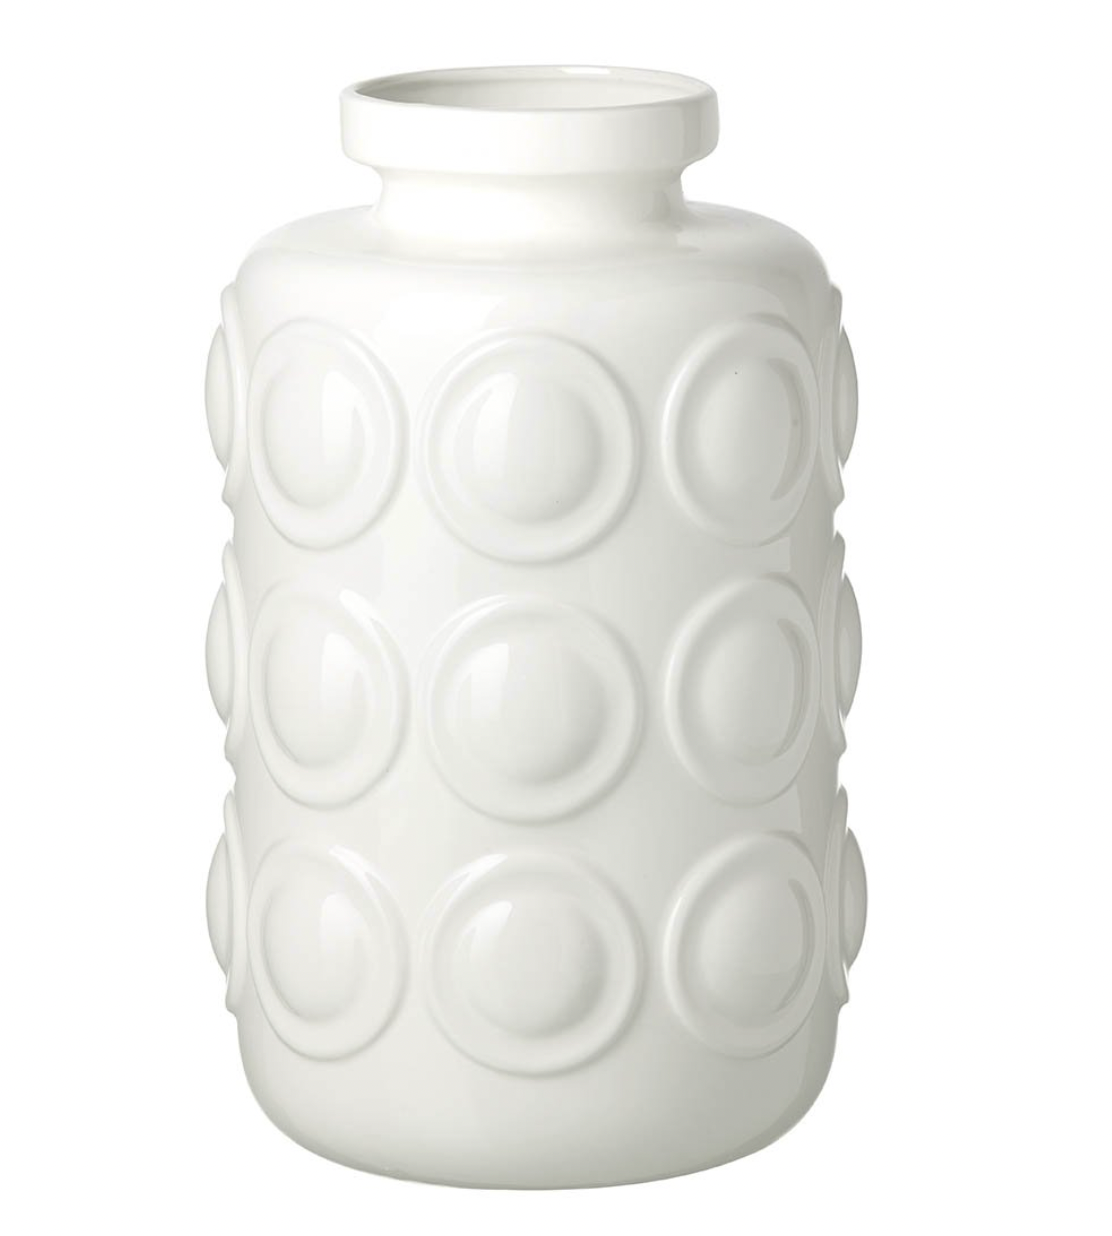 Ceramic White Orbit Vase - Large